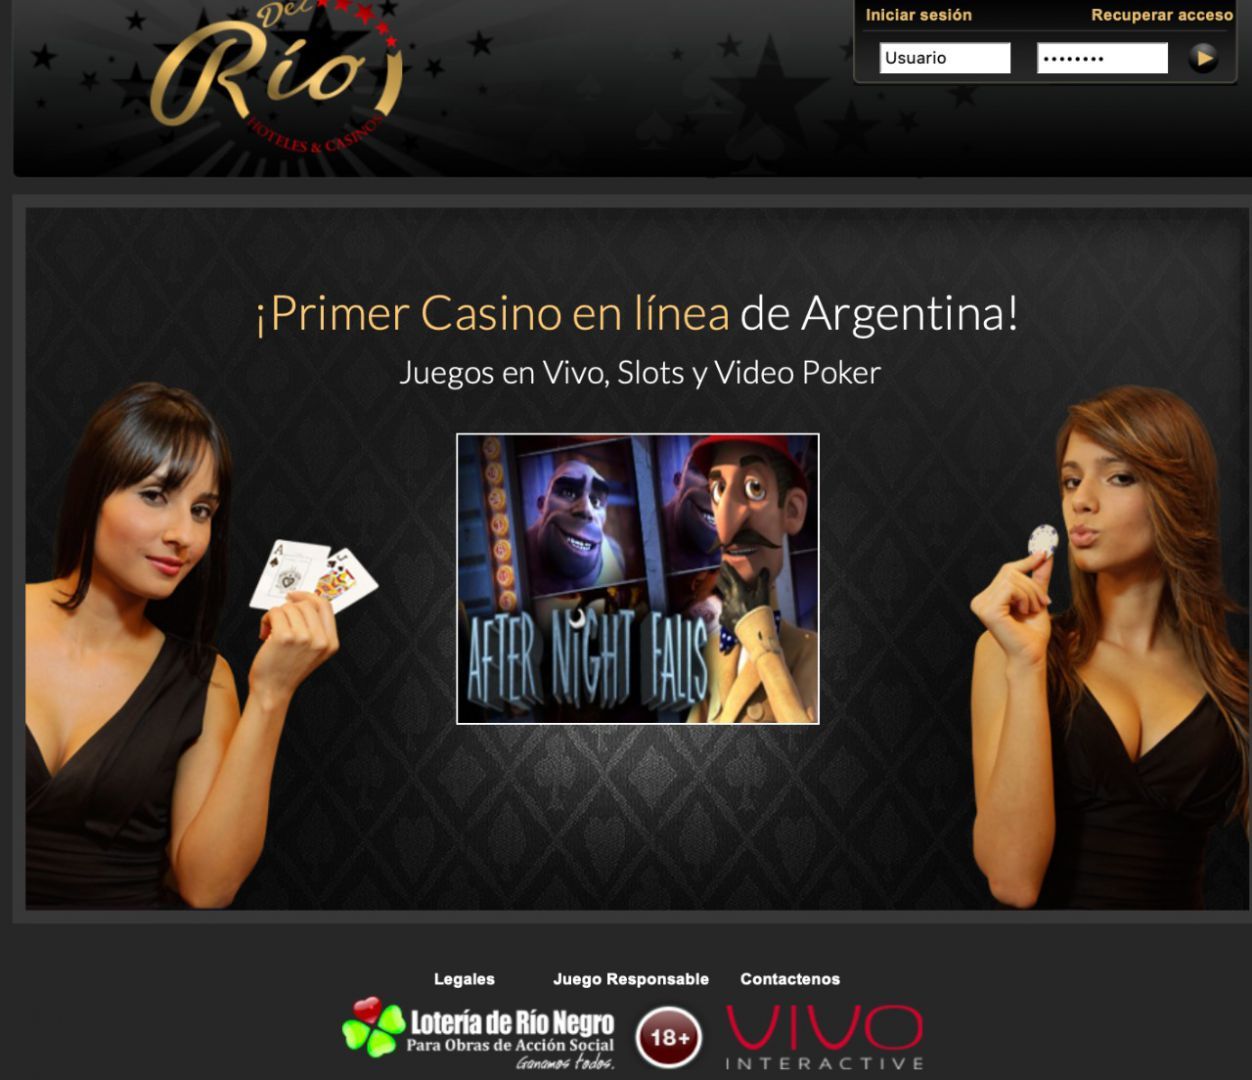 El negocio de la casino online Argentina